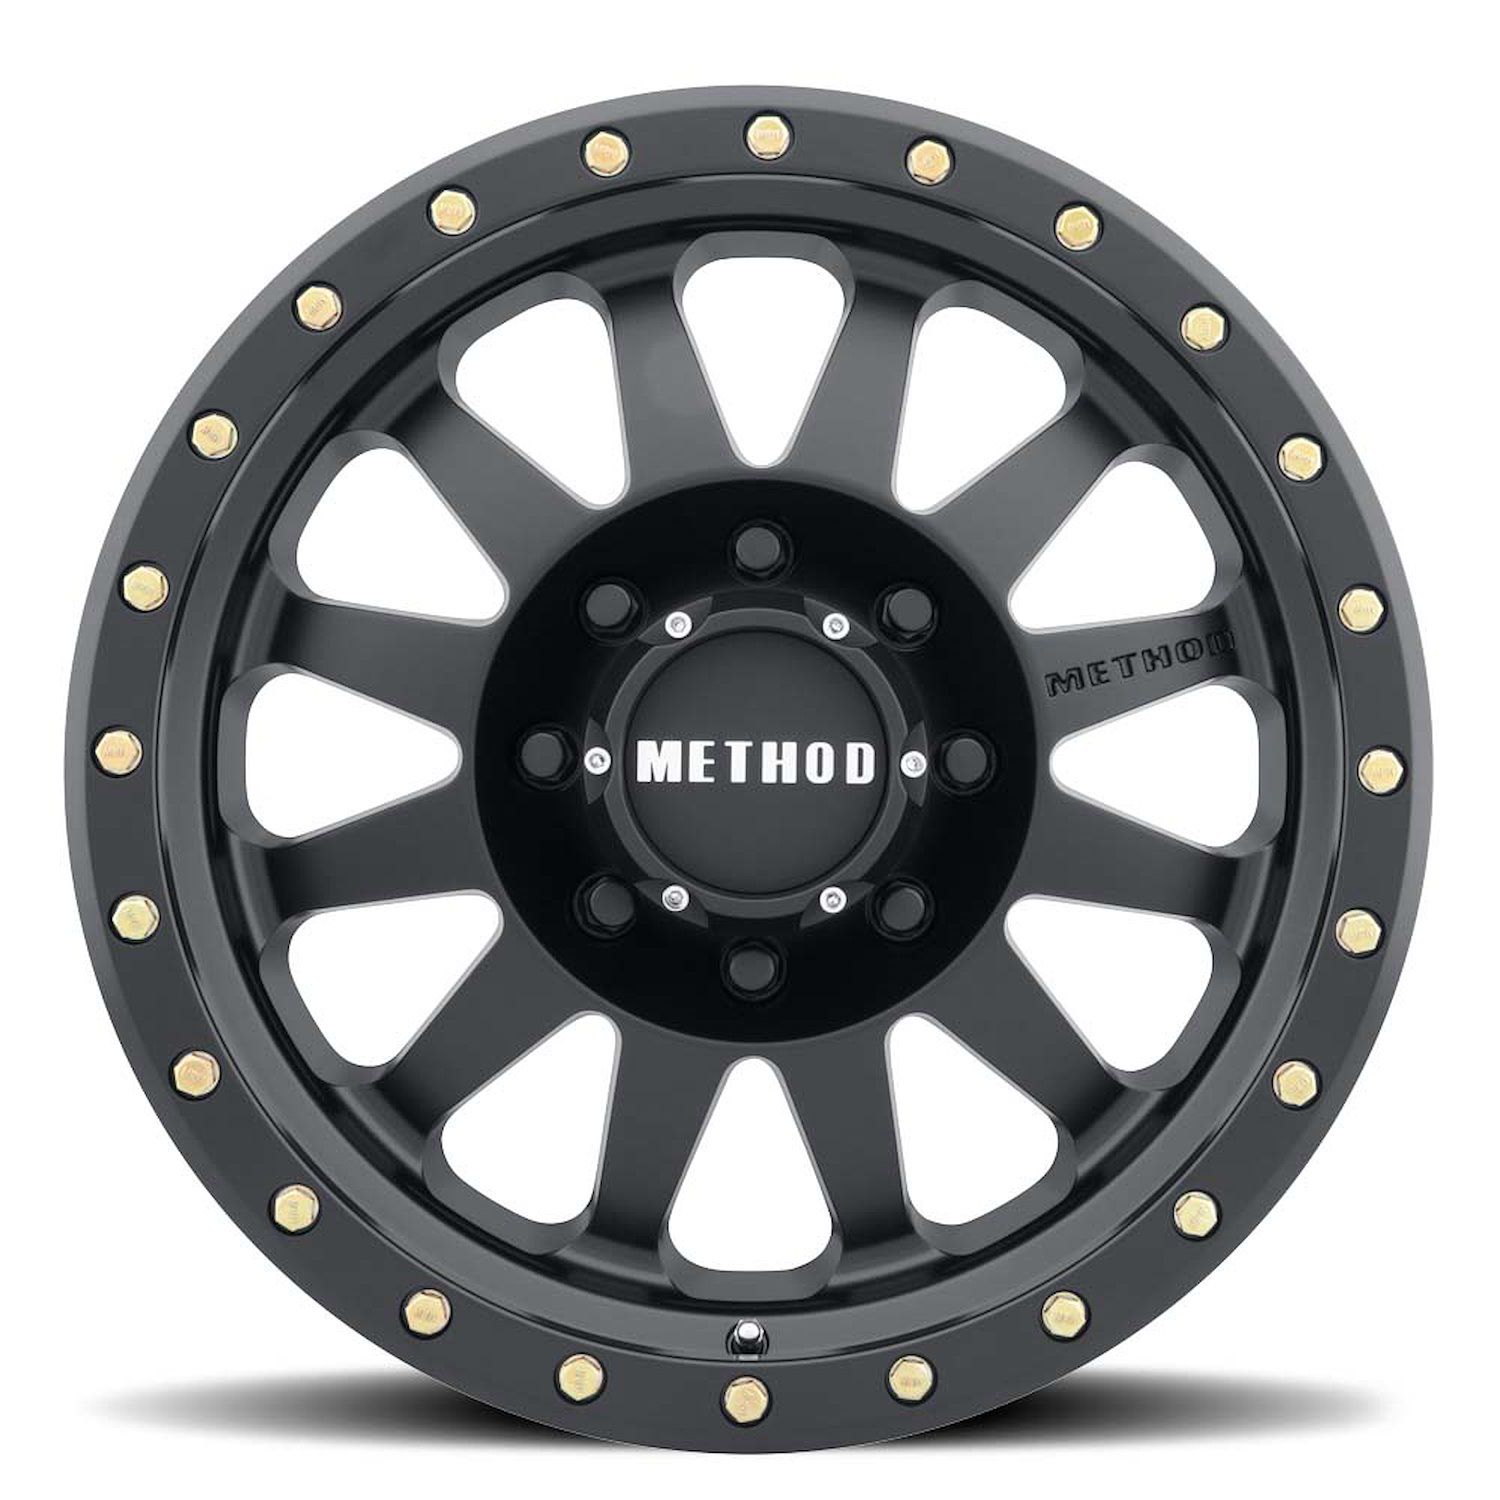 MR30478580500 STREET MR304 Double Standard Wheel [Size: 17" x 8.5"] Matte Black